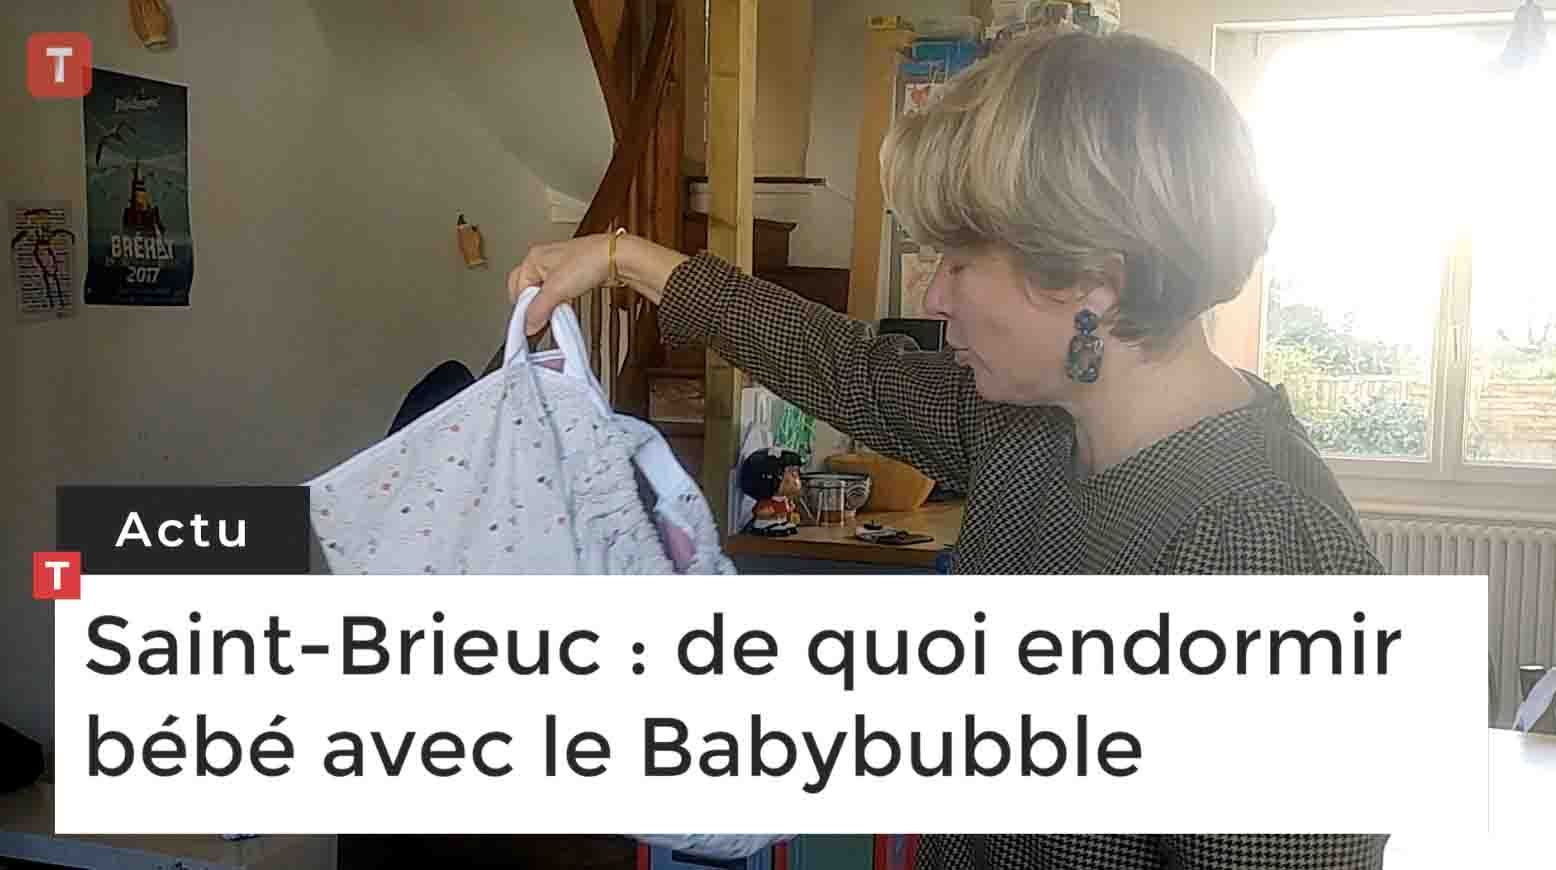 Saint-Brieuc : de quoi endormir bébé avec le Babybubble  (Le Télégramme)